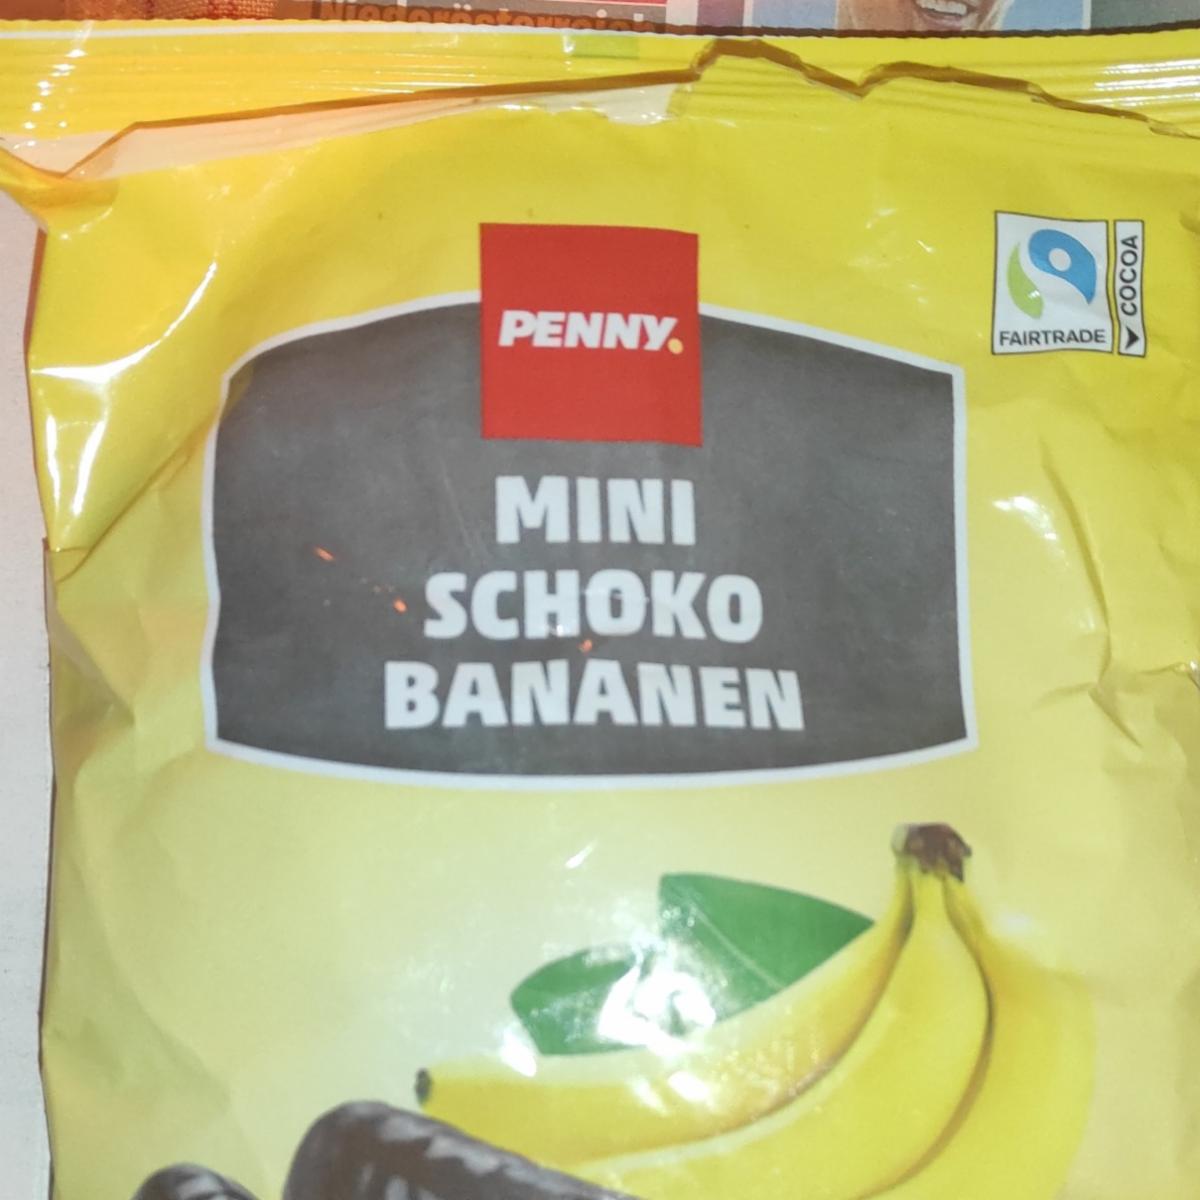 Fotografie - Mini Schoko Bananen Penny